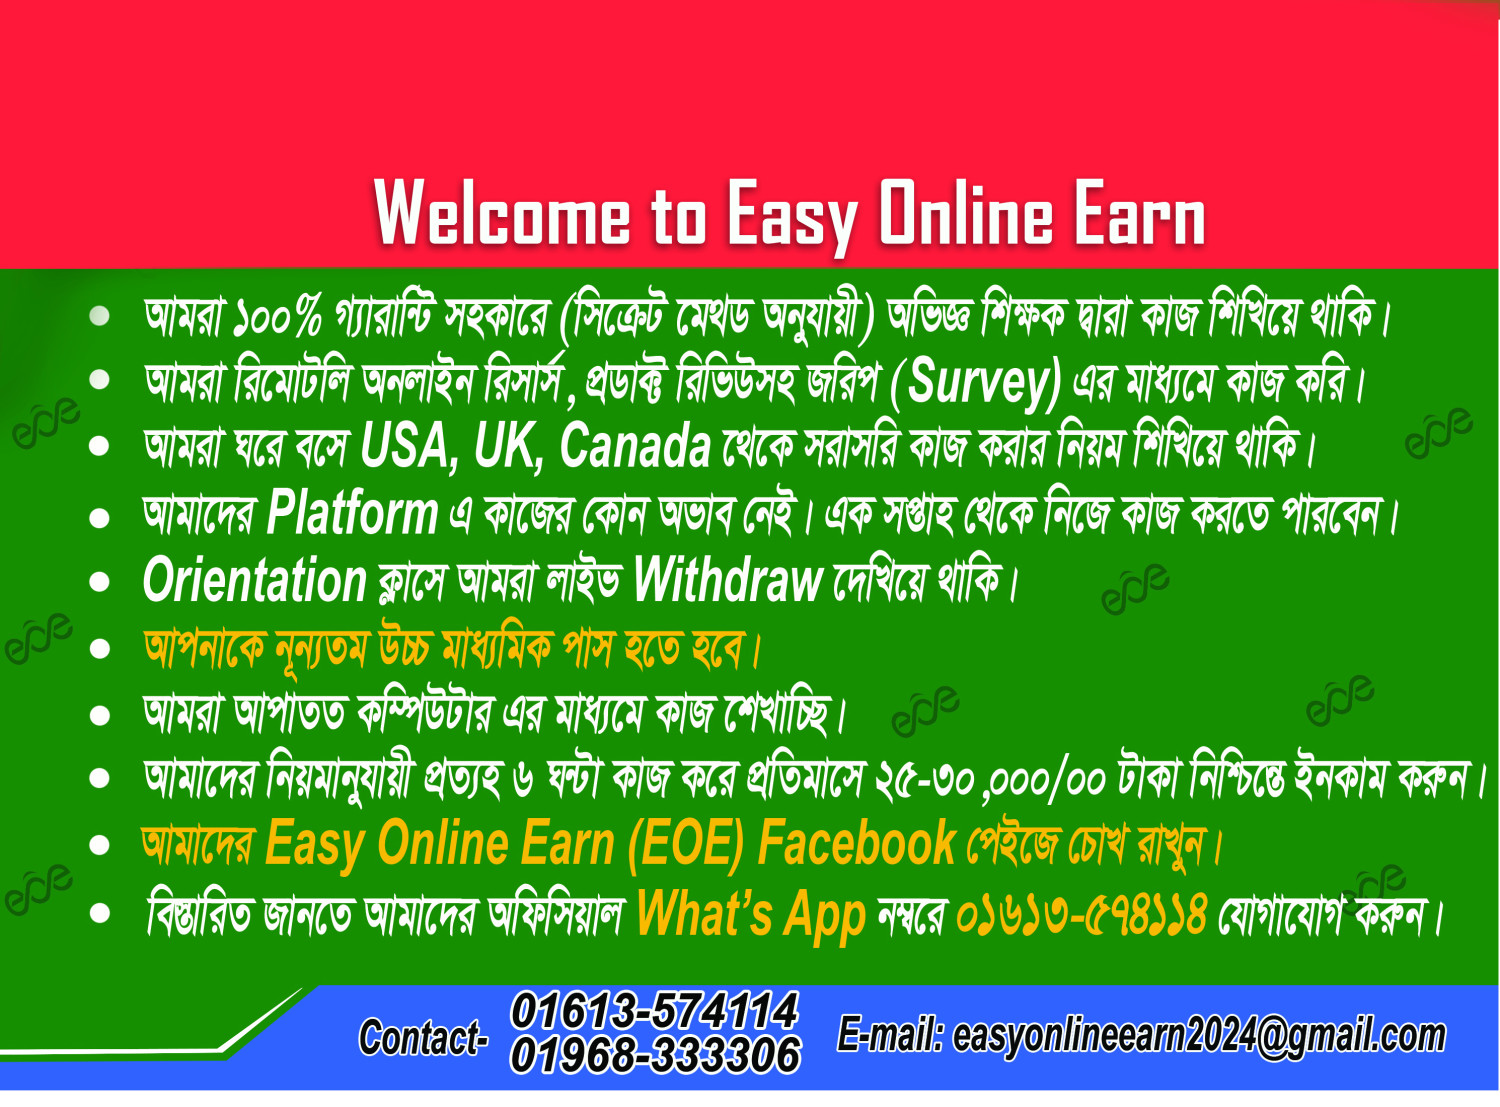 Easy Online Earn promo